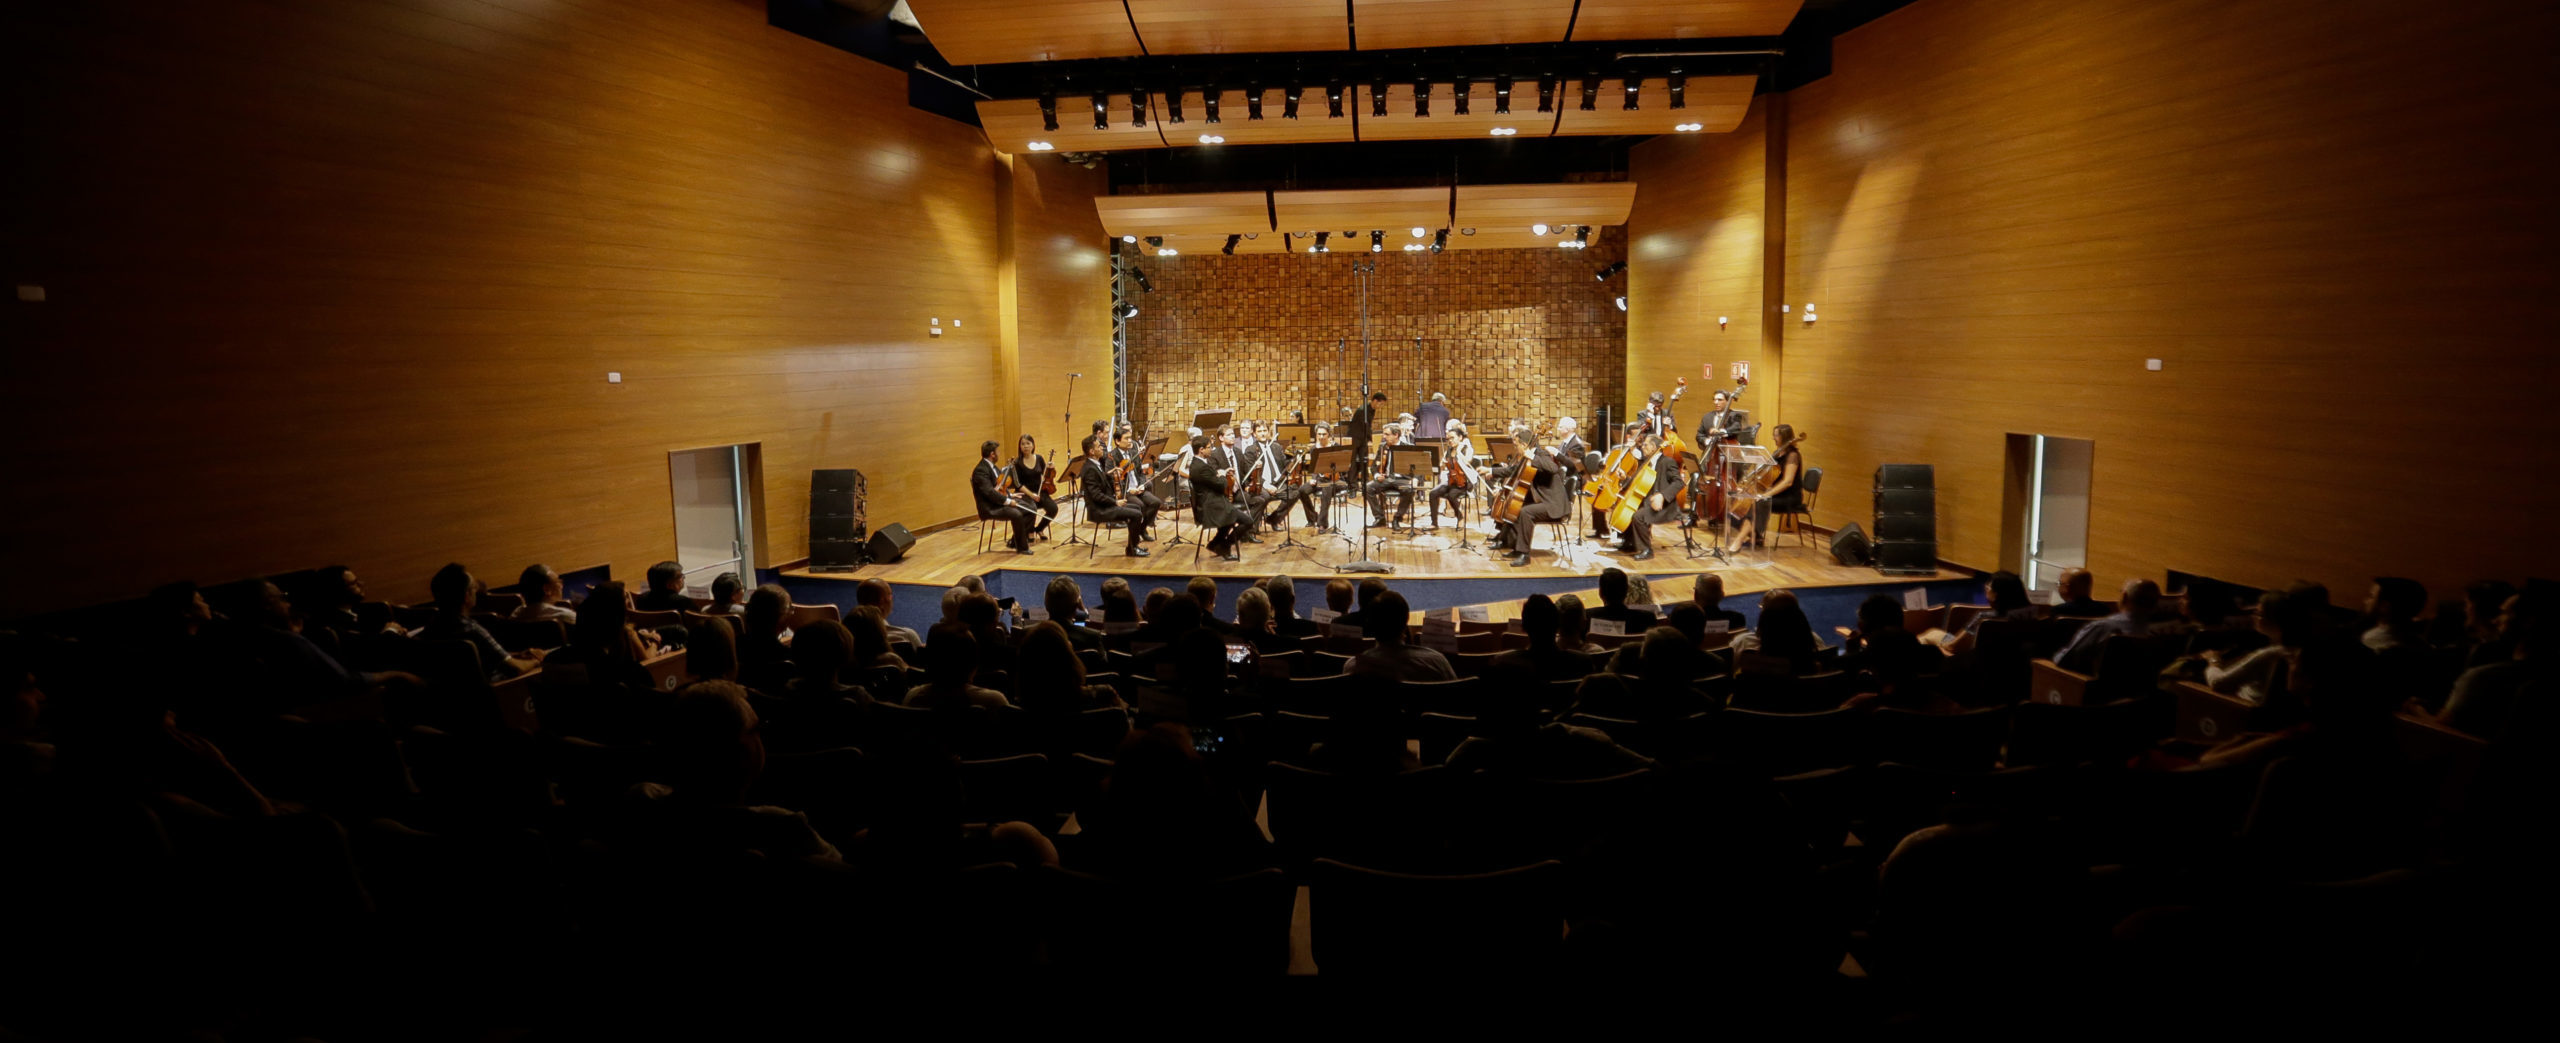 (Português) Orquestra Sinfônica da USP promove três concertos gratuitos em agosto